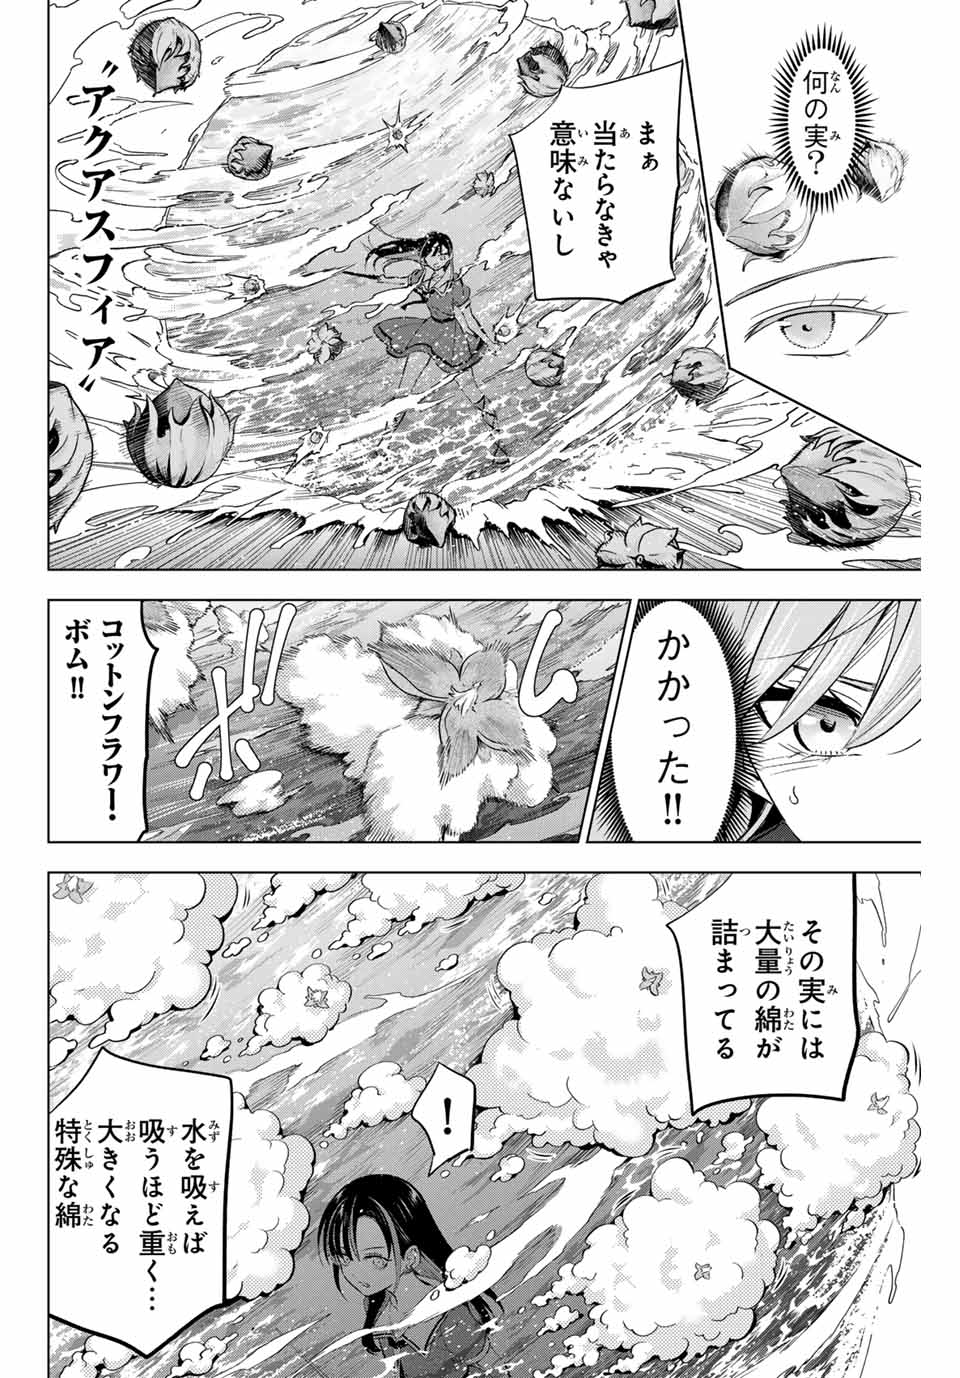 Kuroneko to Majo no Kyoushitsu - Chapter 54 - Page 2